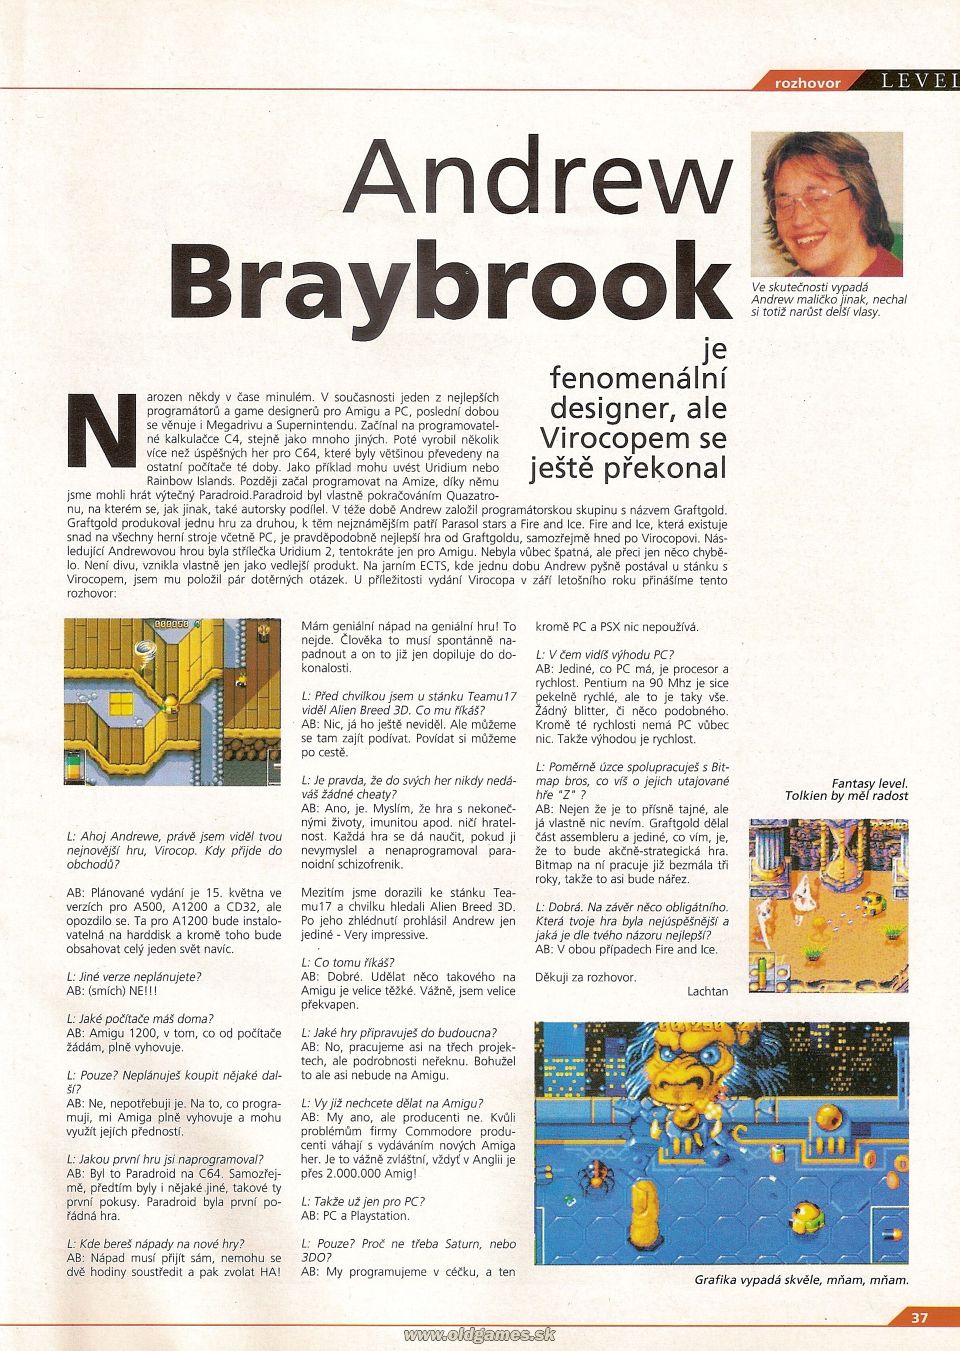 Interview: Andrew Braybrook